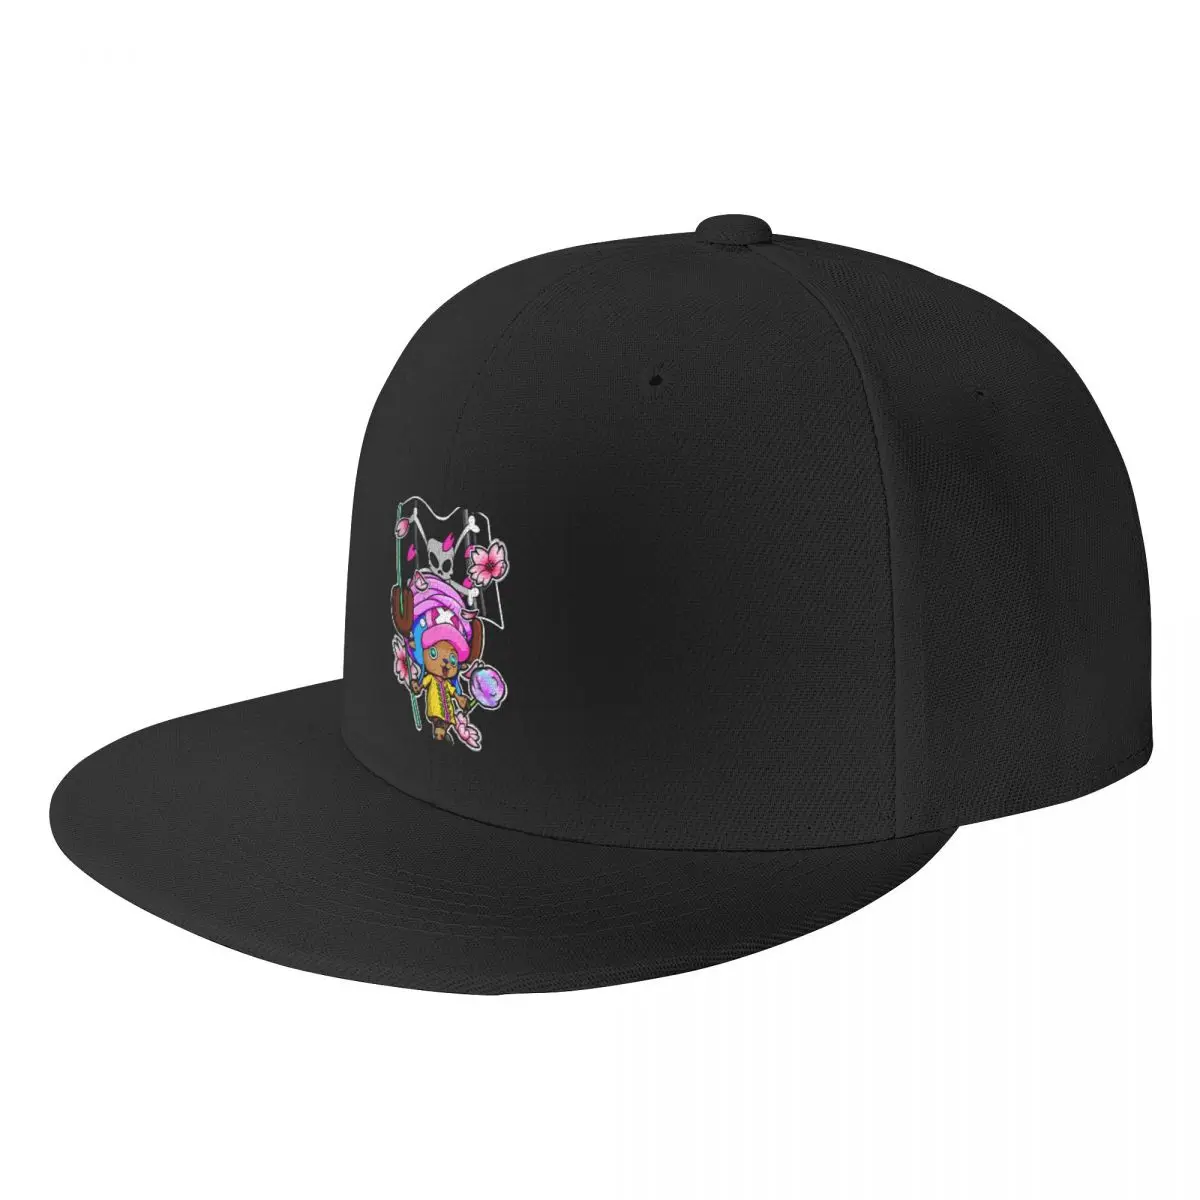 

Tony Tony Moose Baseball Cap Luxury Brand Fashion Beach black Hats Woman Men's